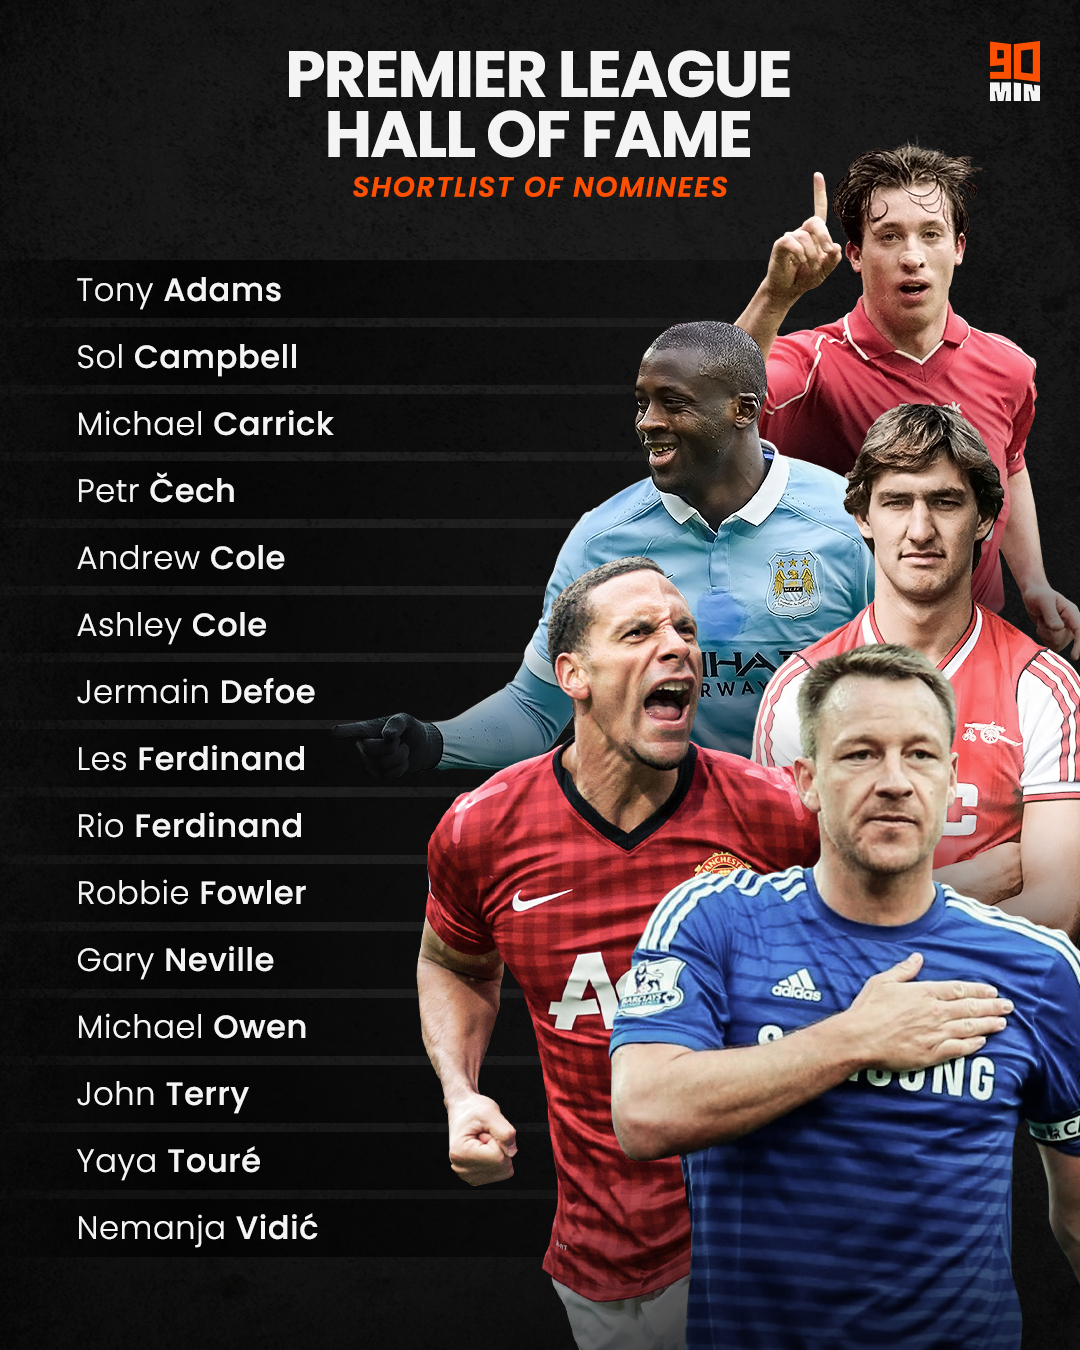 23 Legends Named On Premier League Hall Of Fame Shortlist